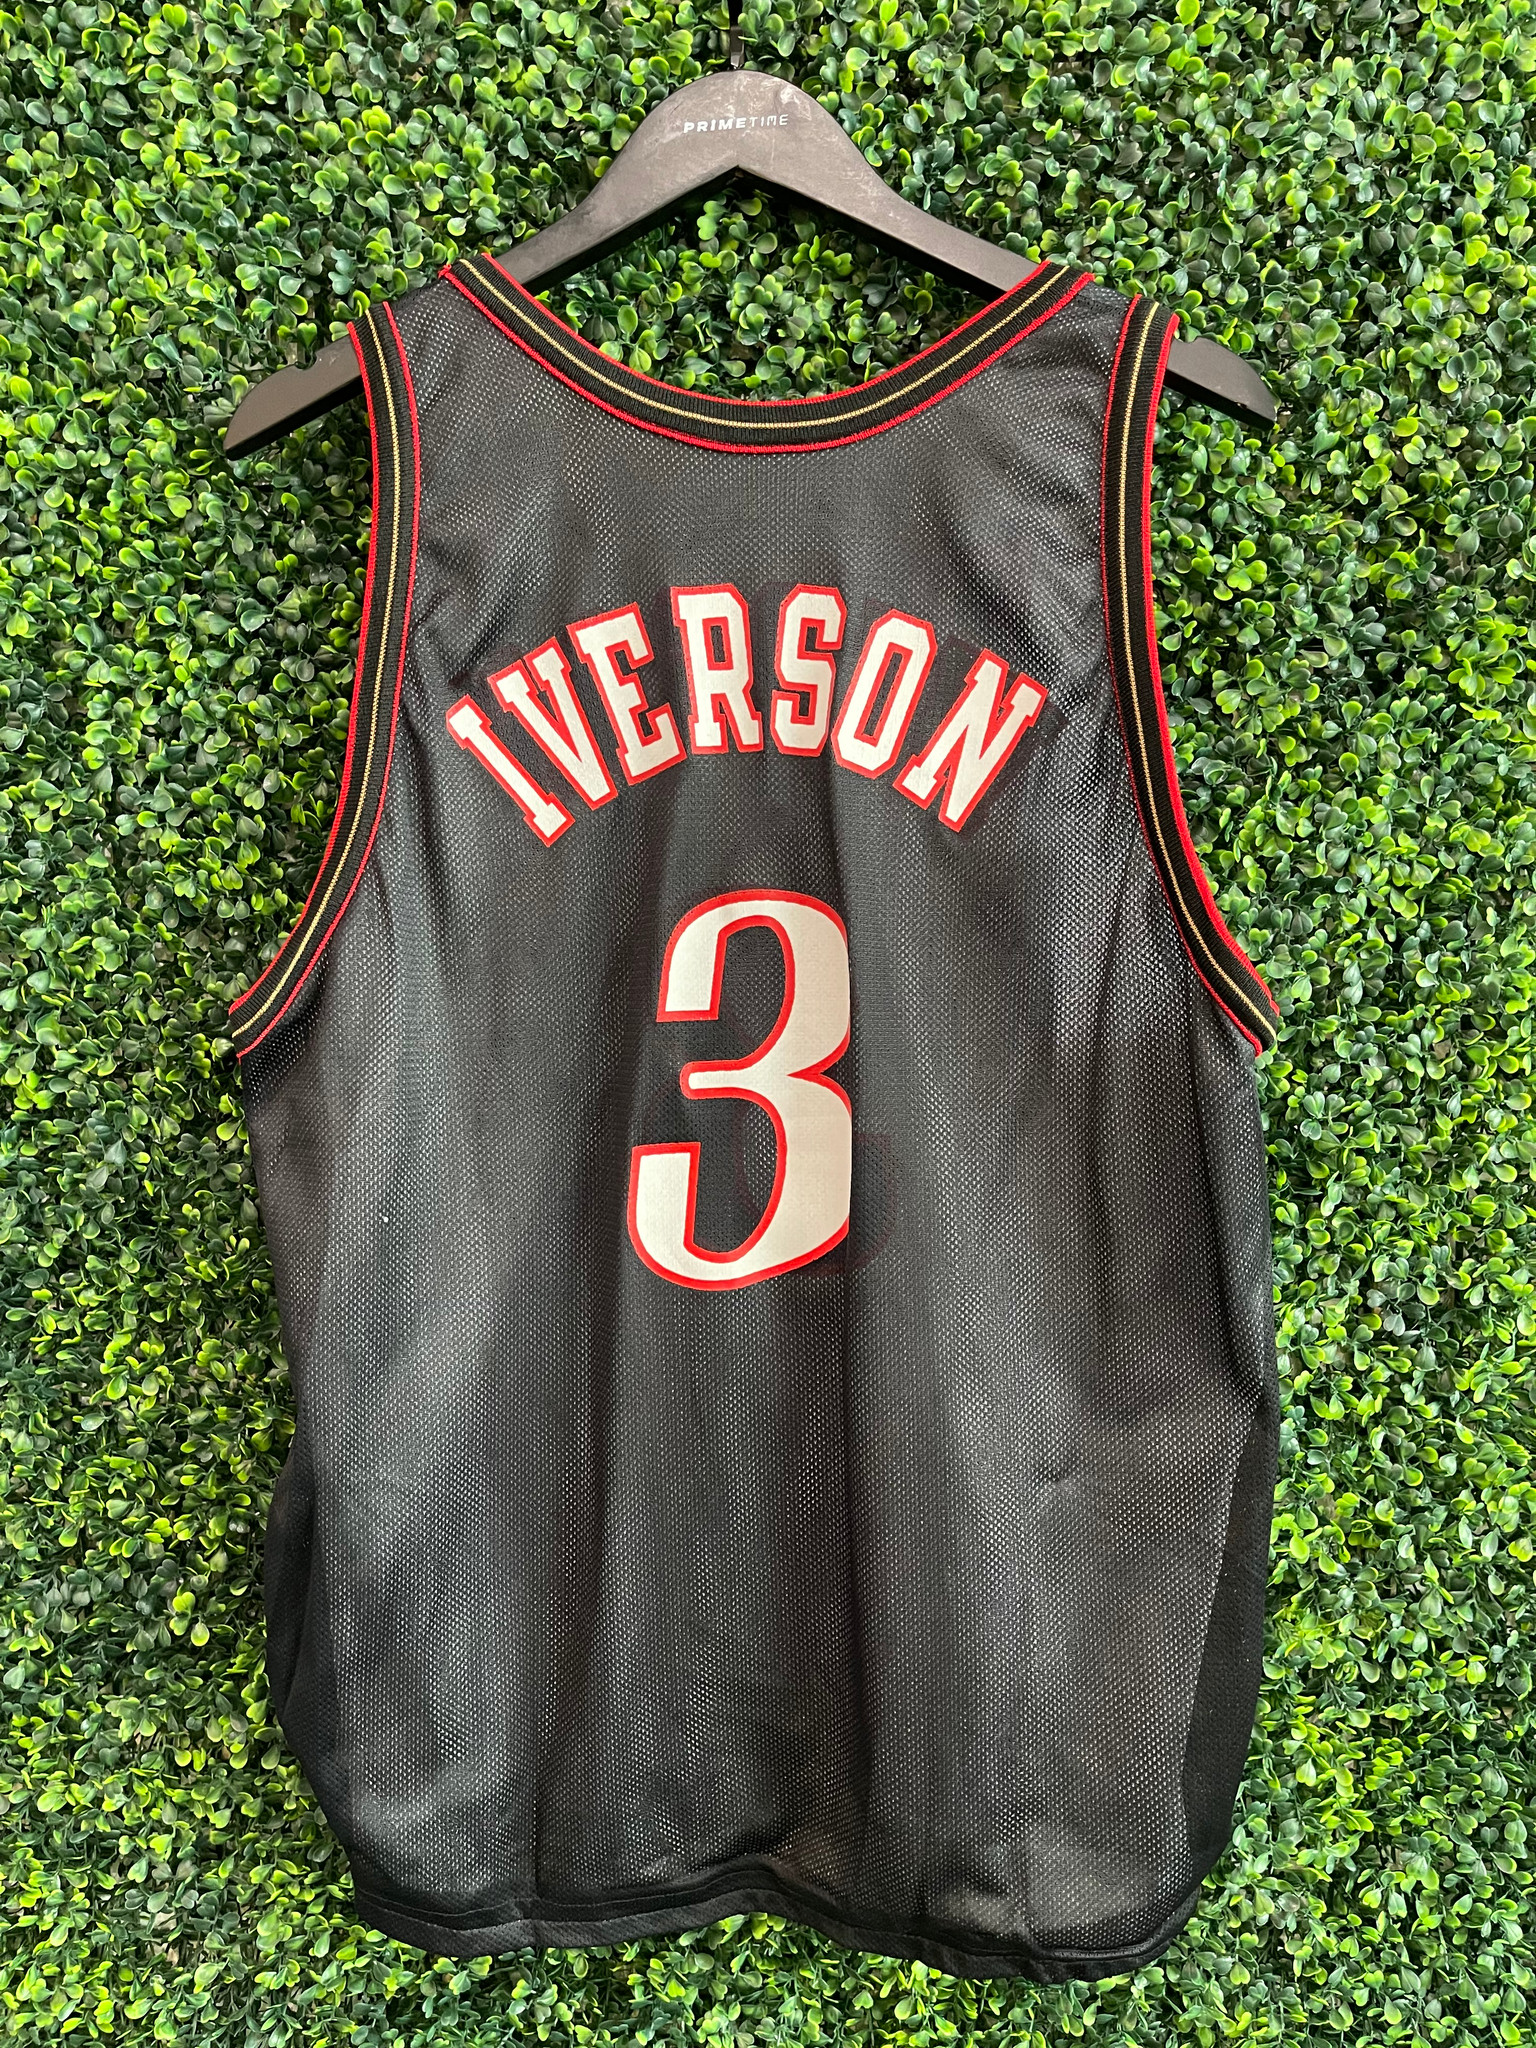 90's Allen Iverson Sixers Champion jersey – Thriller